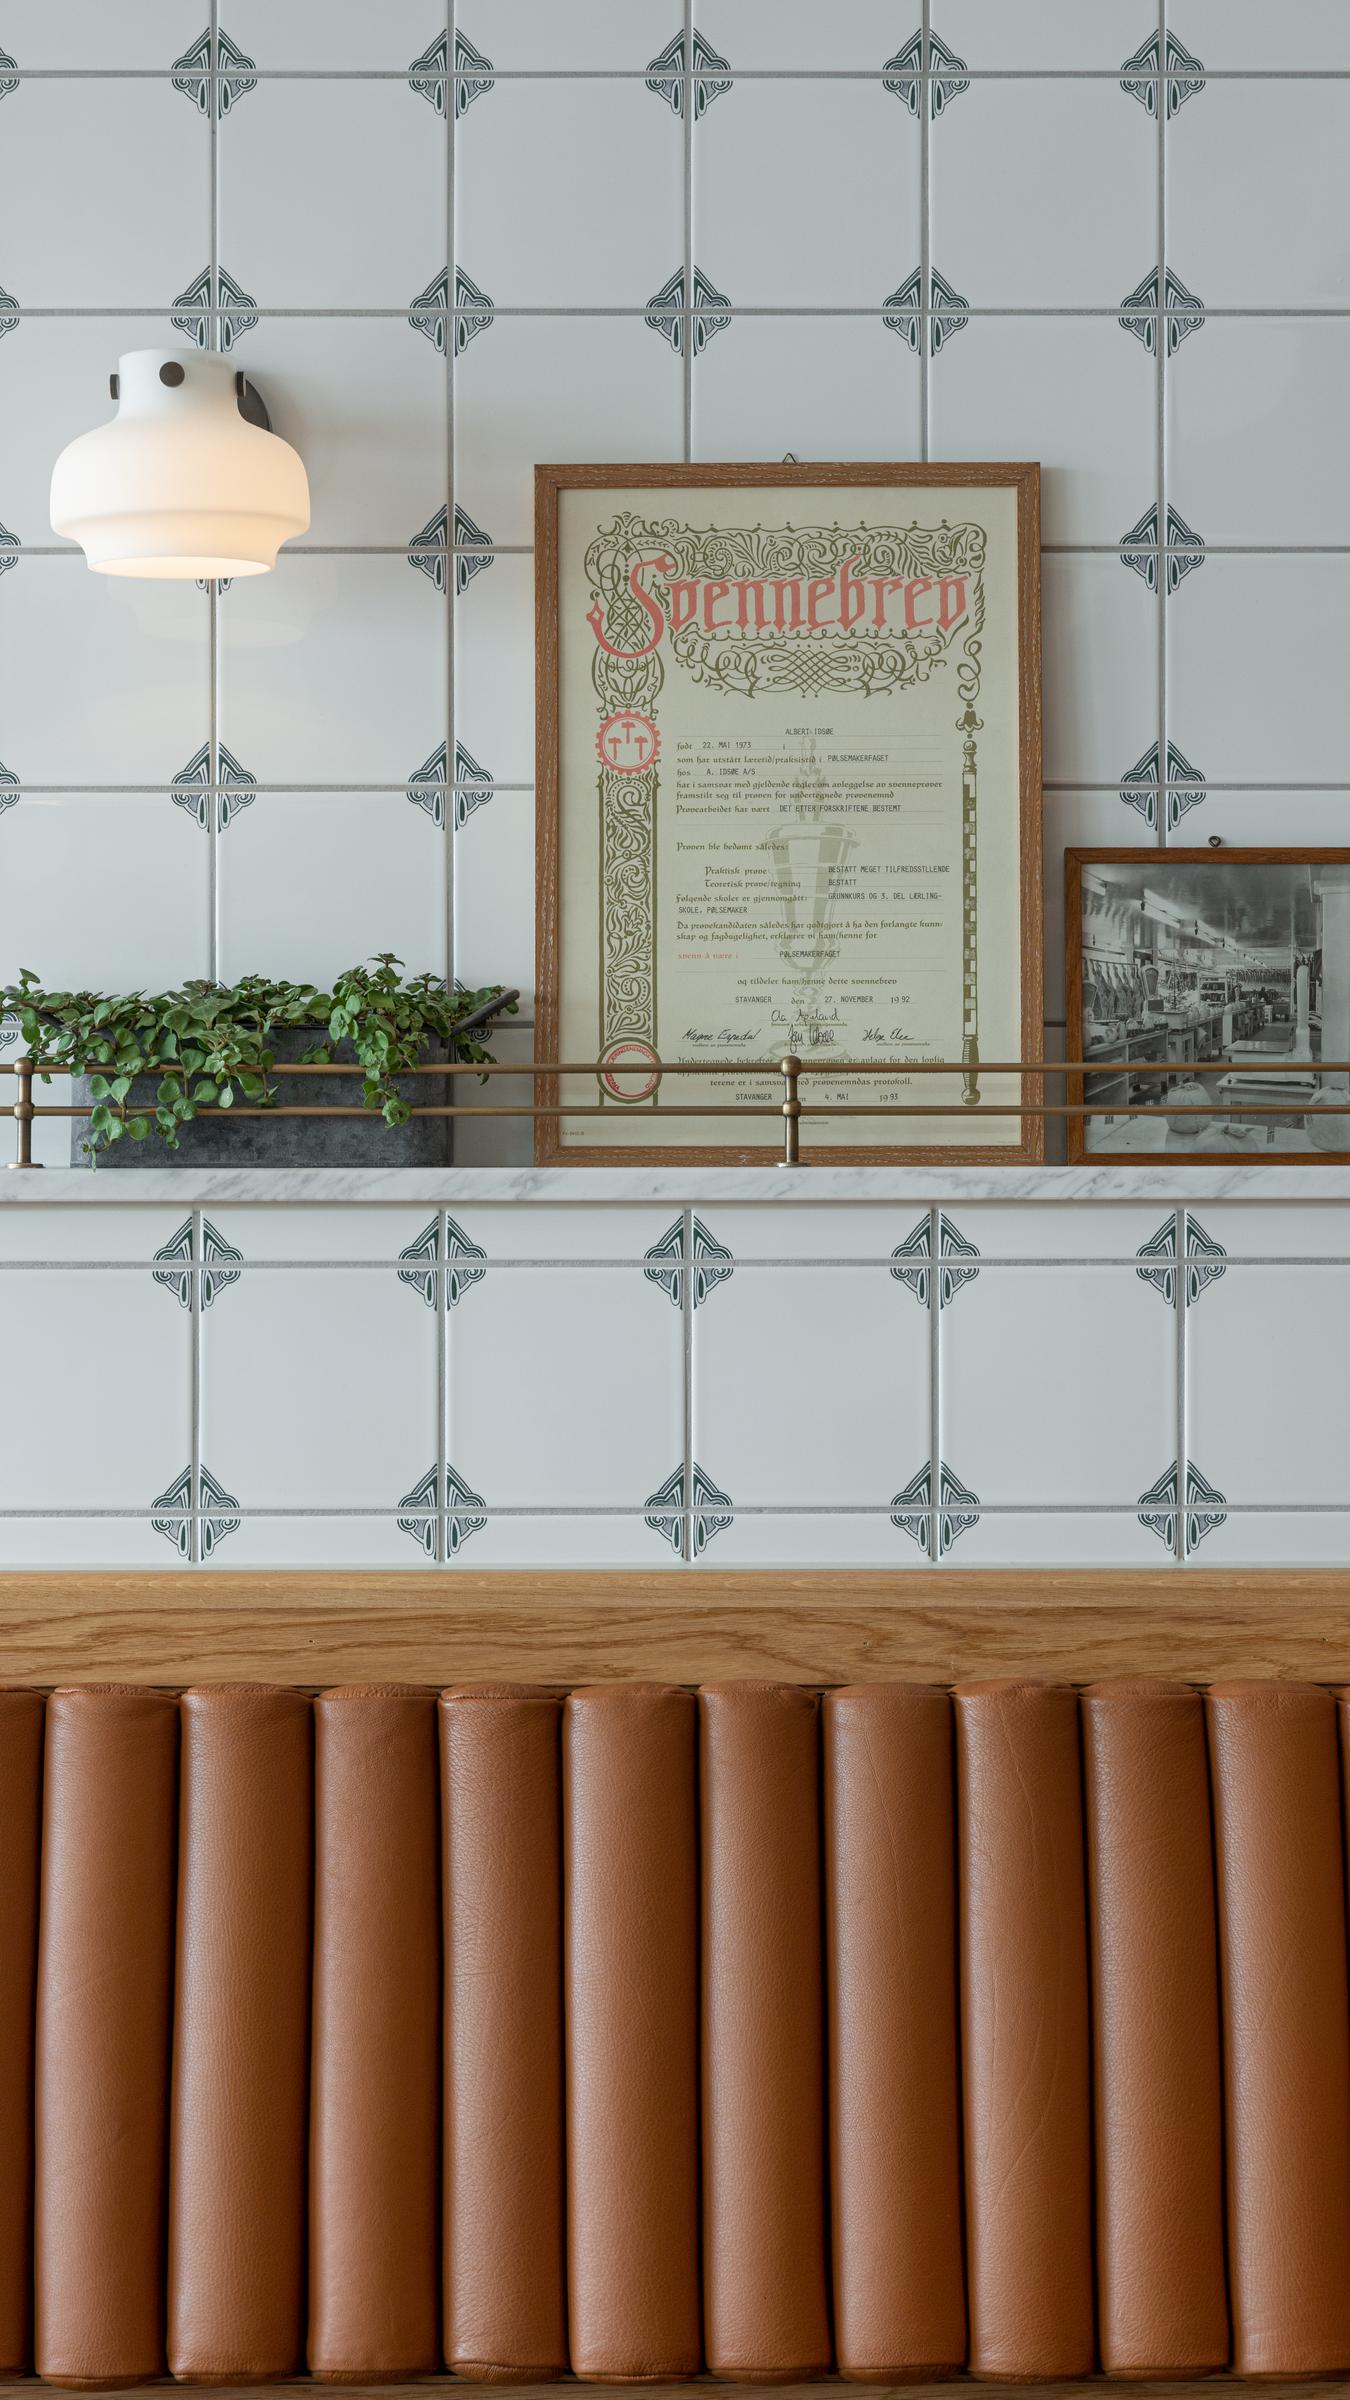 Detaljbilde fra sittebenk og vegg i restaurant. Fliser, tre og skinn. Foto 